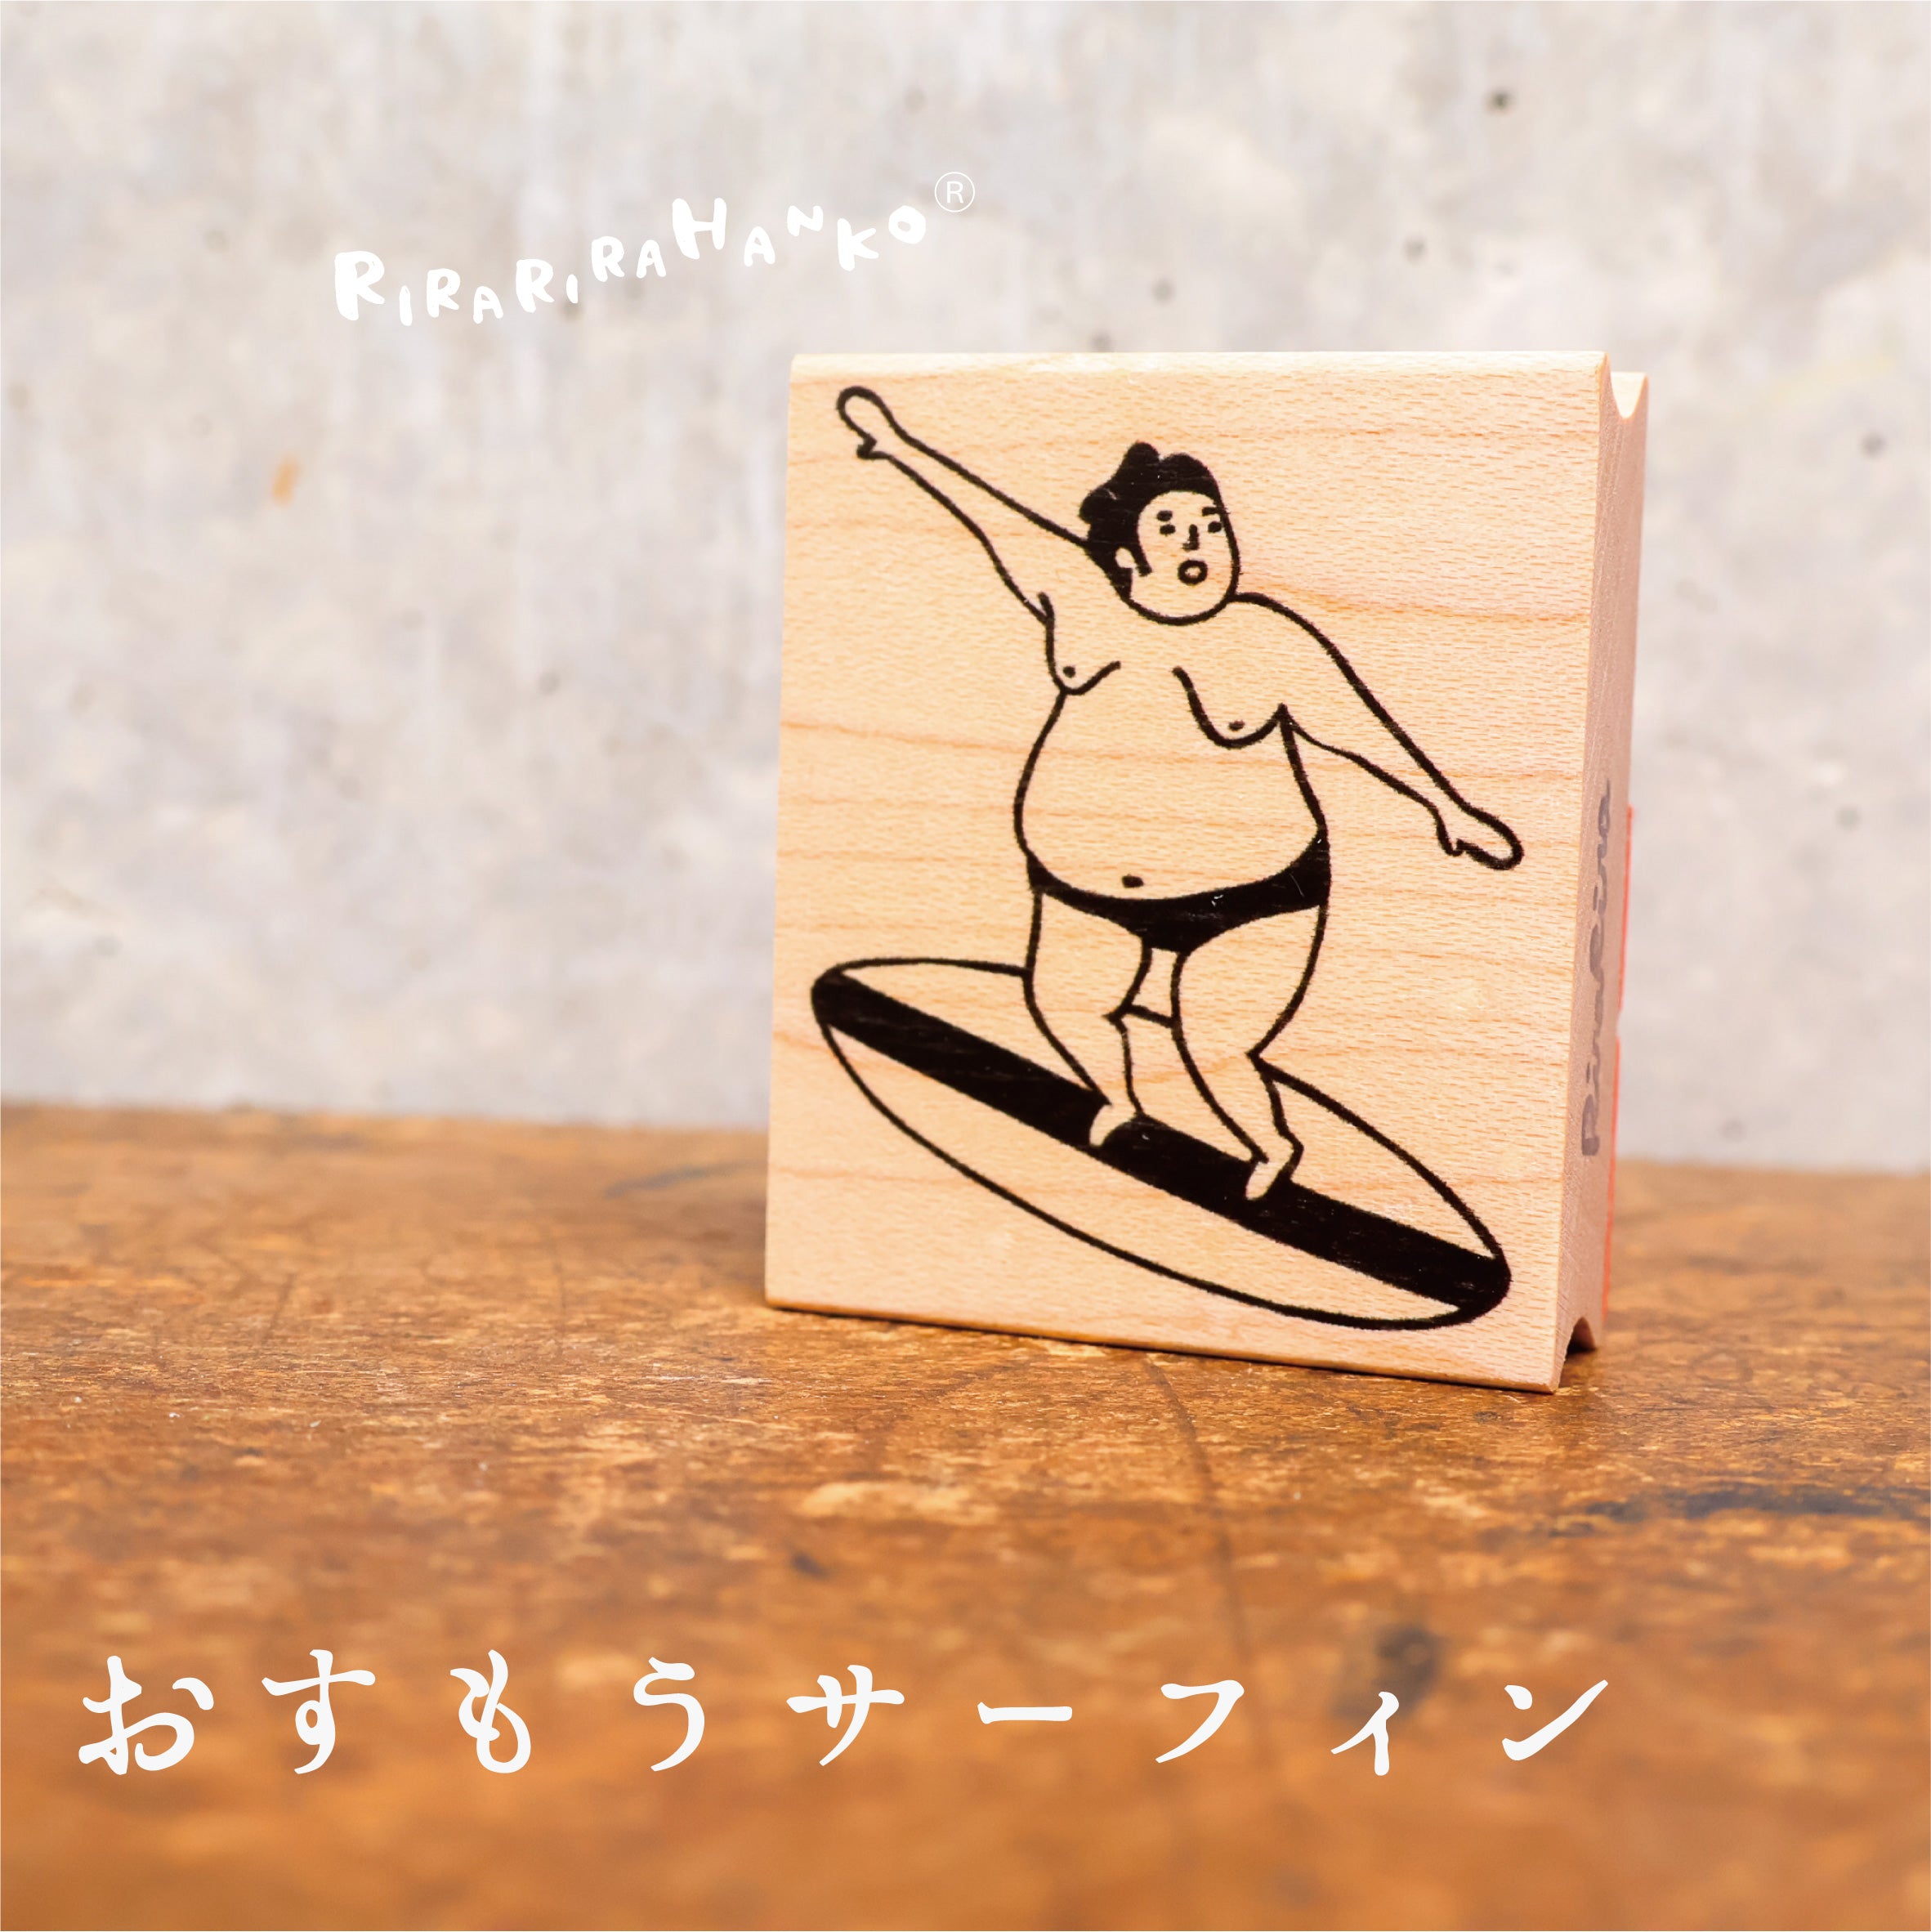 Sumo Wrestler "Surfing"